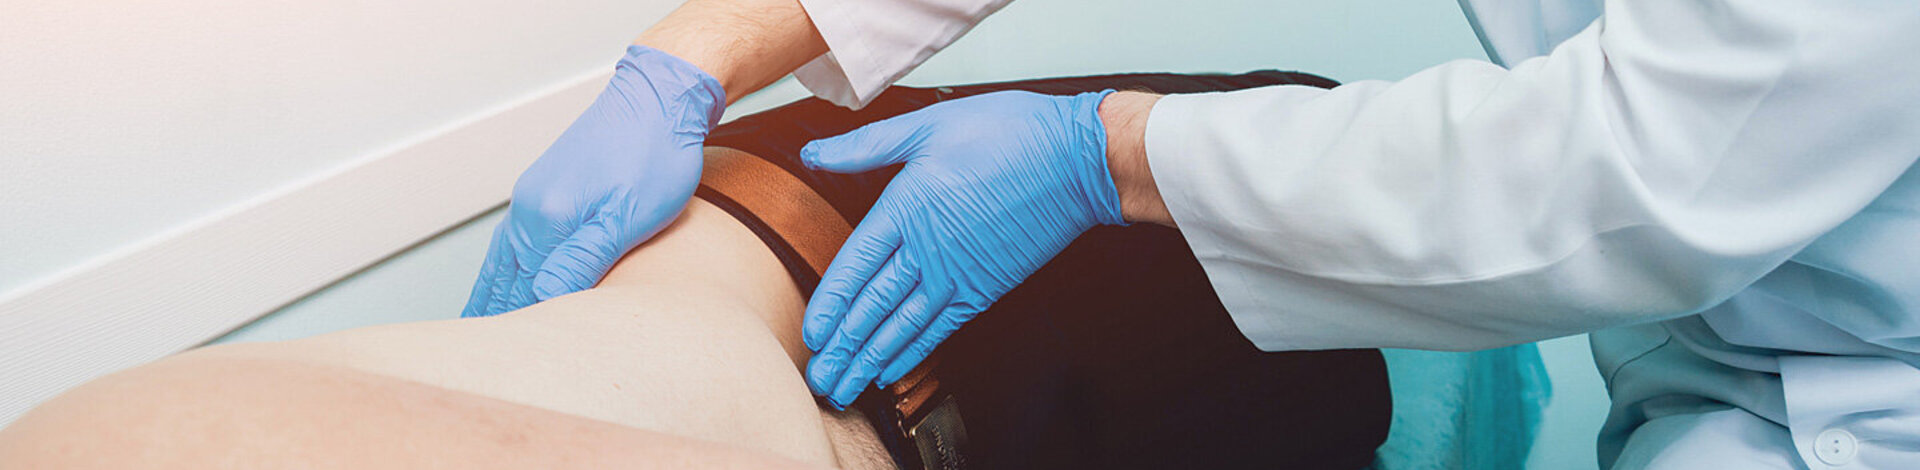 Bei einer Prostata-Vorsorgeuntersuchung tastet ein Urologe den Bauchraum eines Patienten ab.